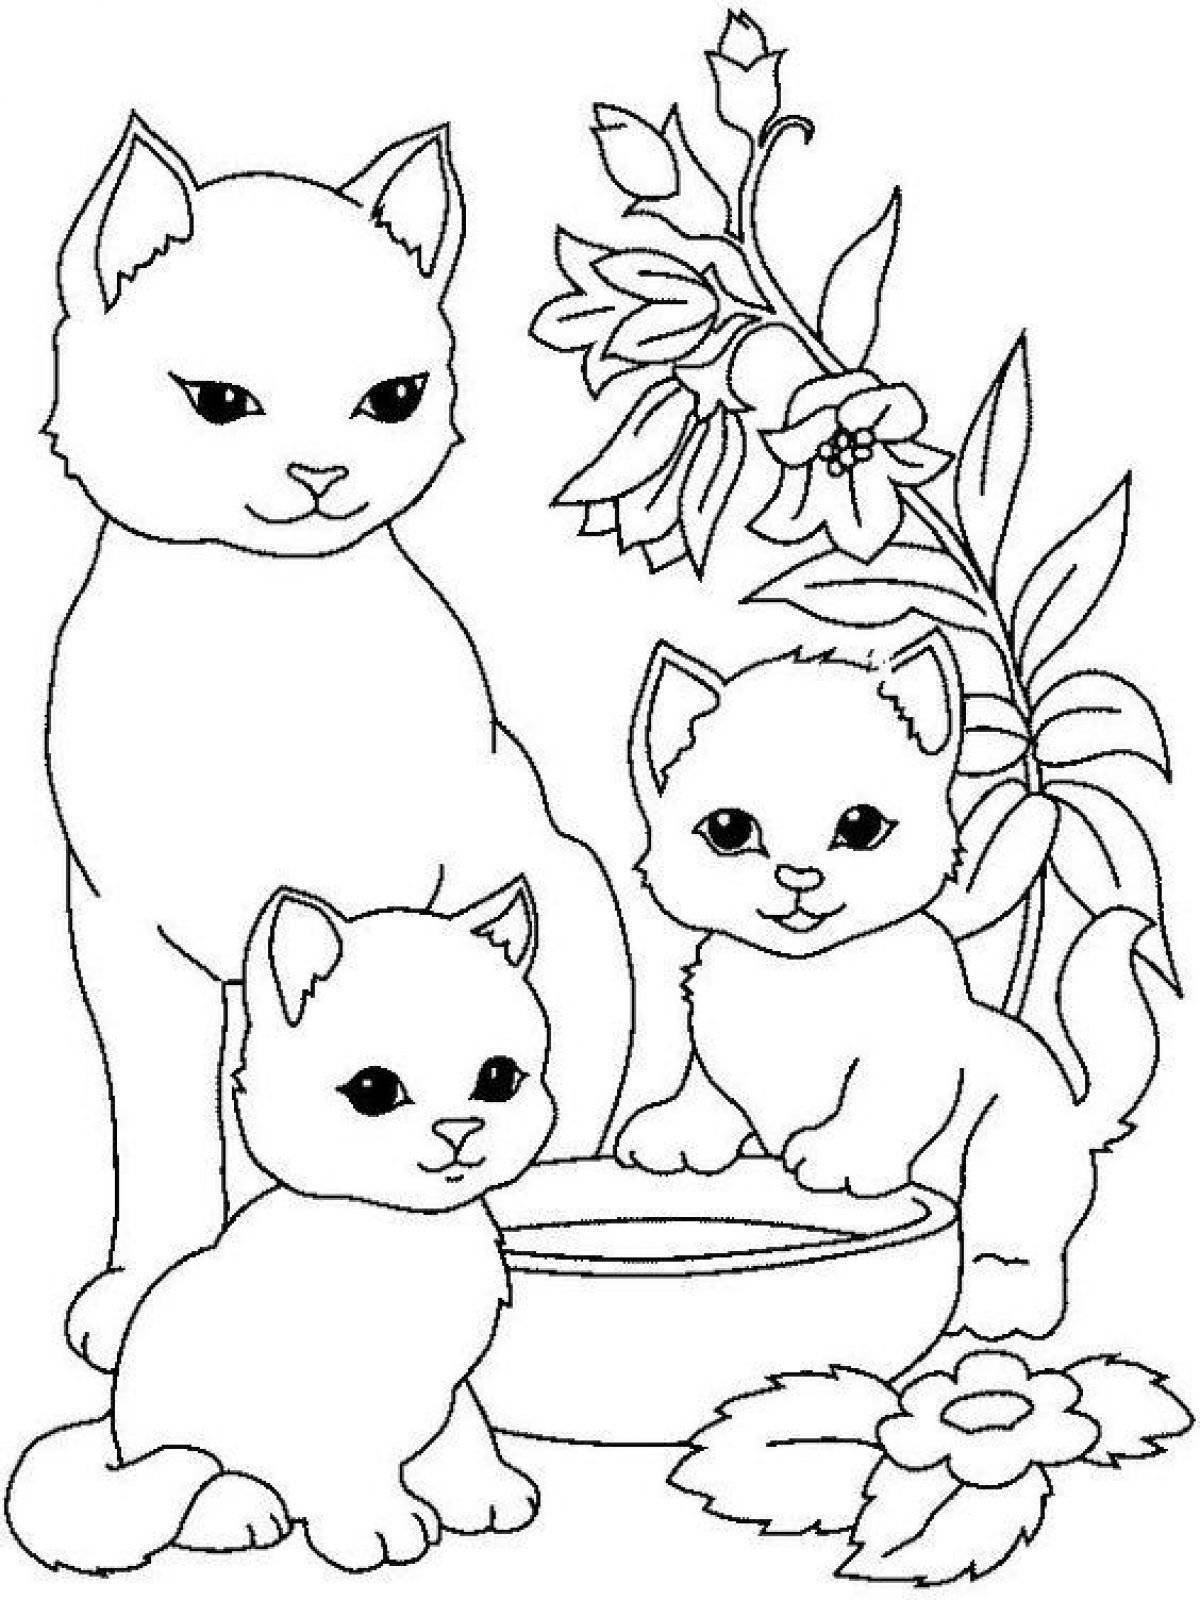 Потрясающие раскраски для девочек 12 лет с милыми кошками